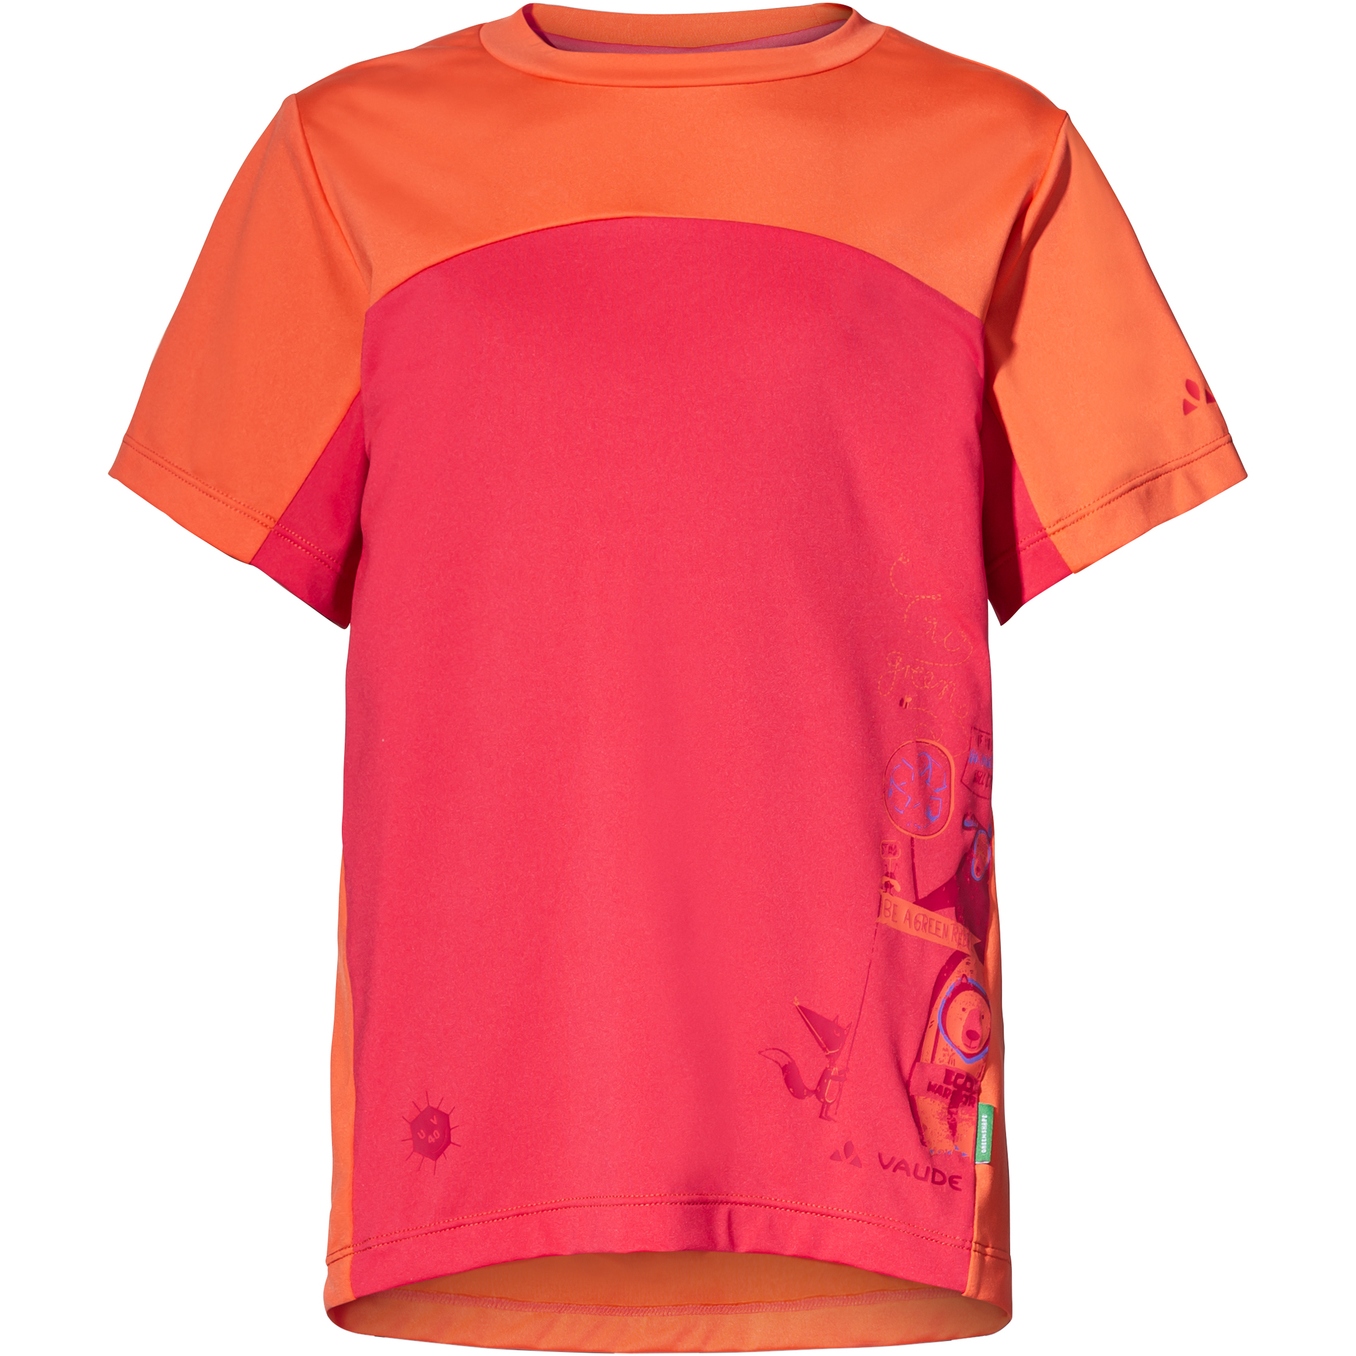 Produktbild von Vaude Solaro II T-Shirt Kinder - bright pink/orange